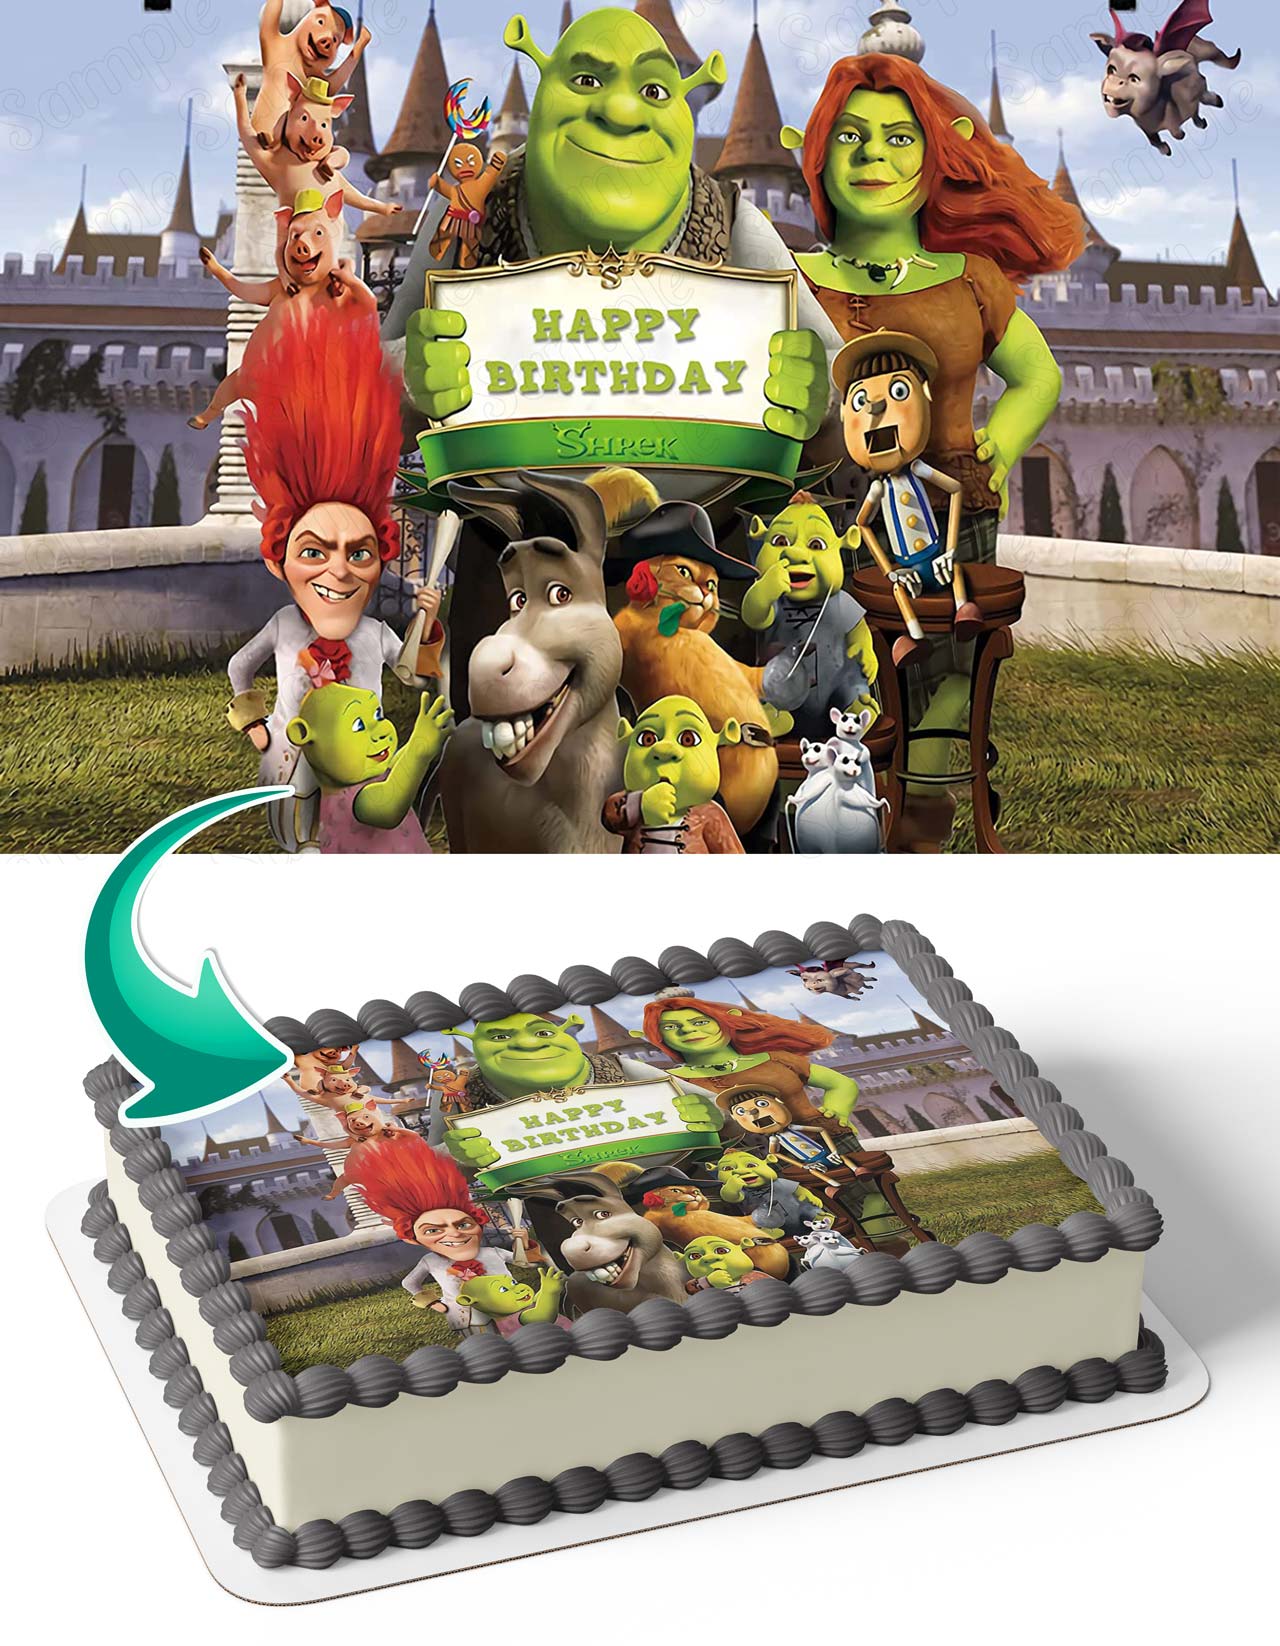 Shrek birthday cake - YouTube